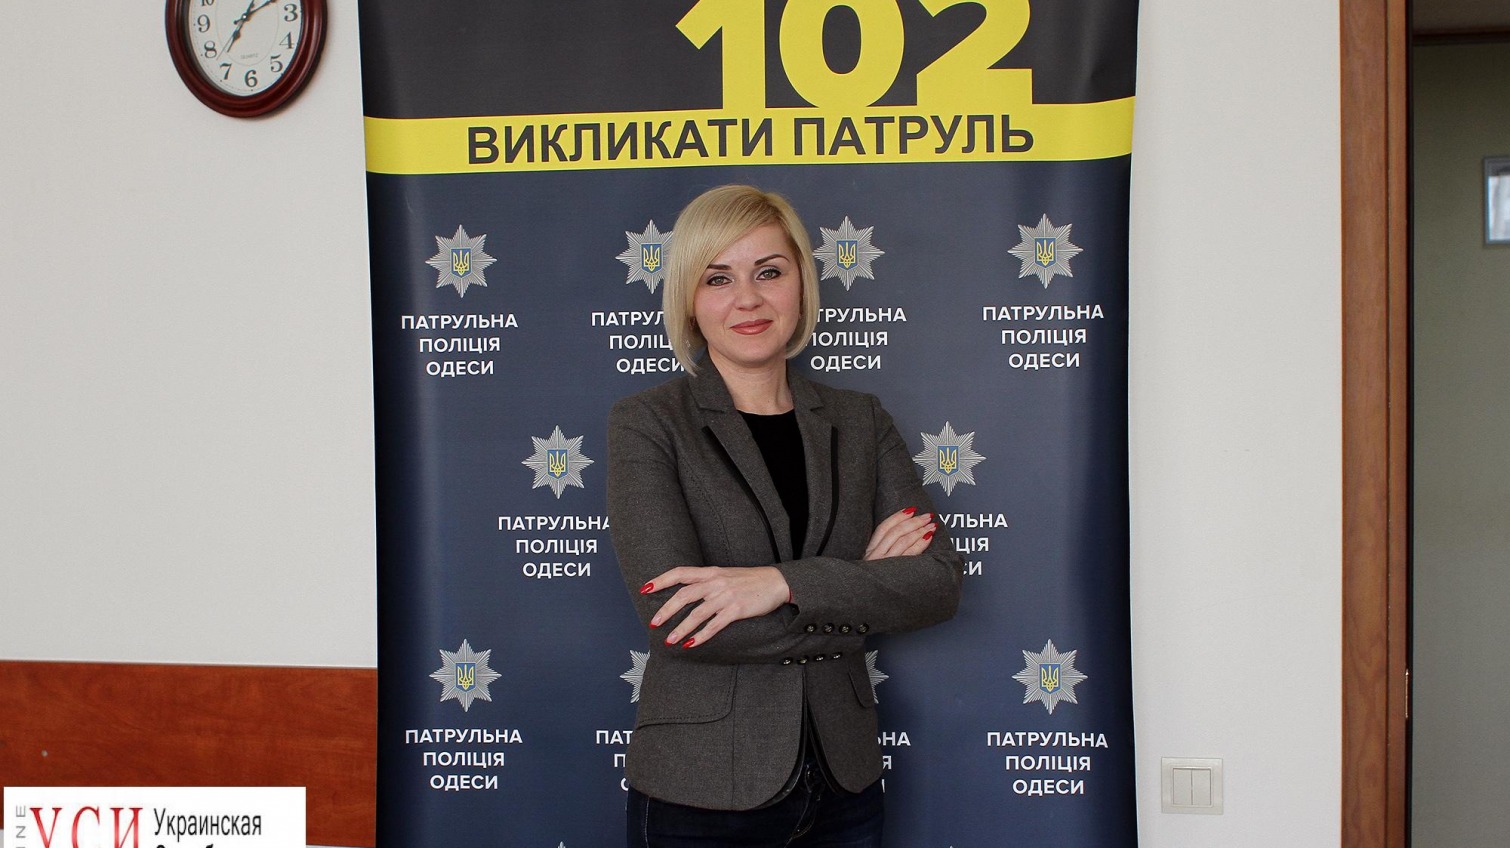 Спикер Патрульной полиции Одессы Алла Марченко: Спасение жизни намного важнее, чем резонанс, который ждет общественность «фото»